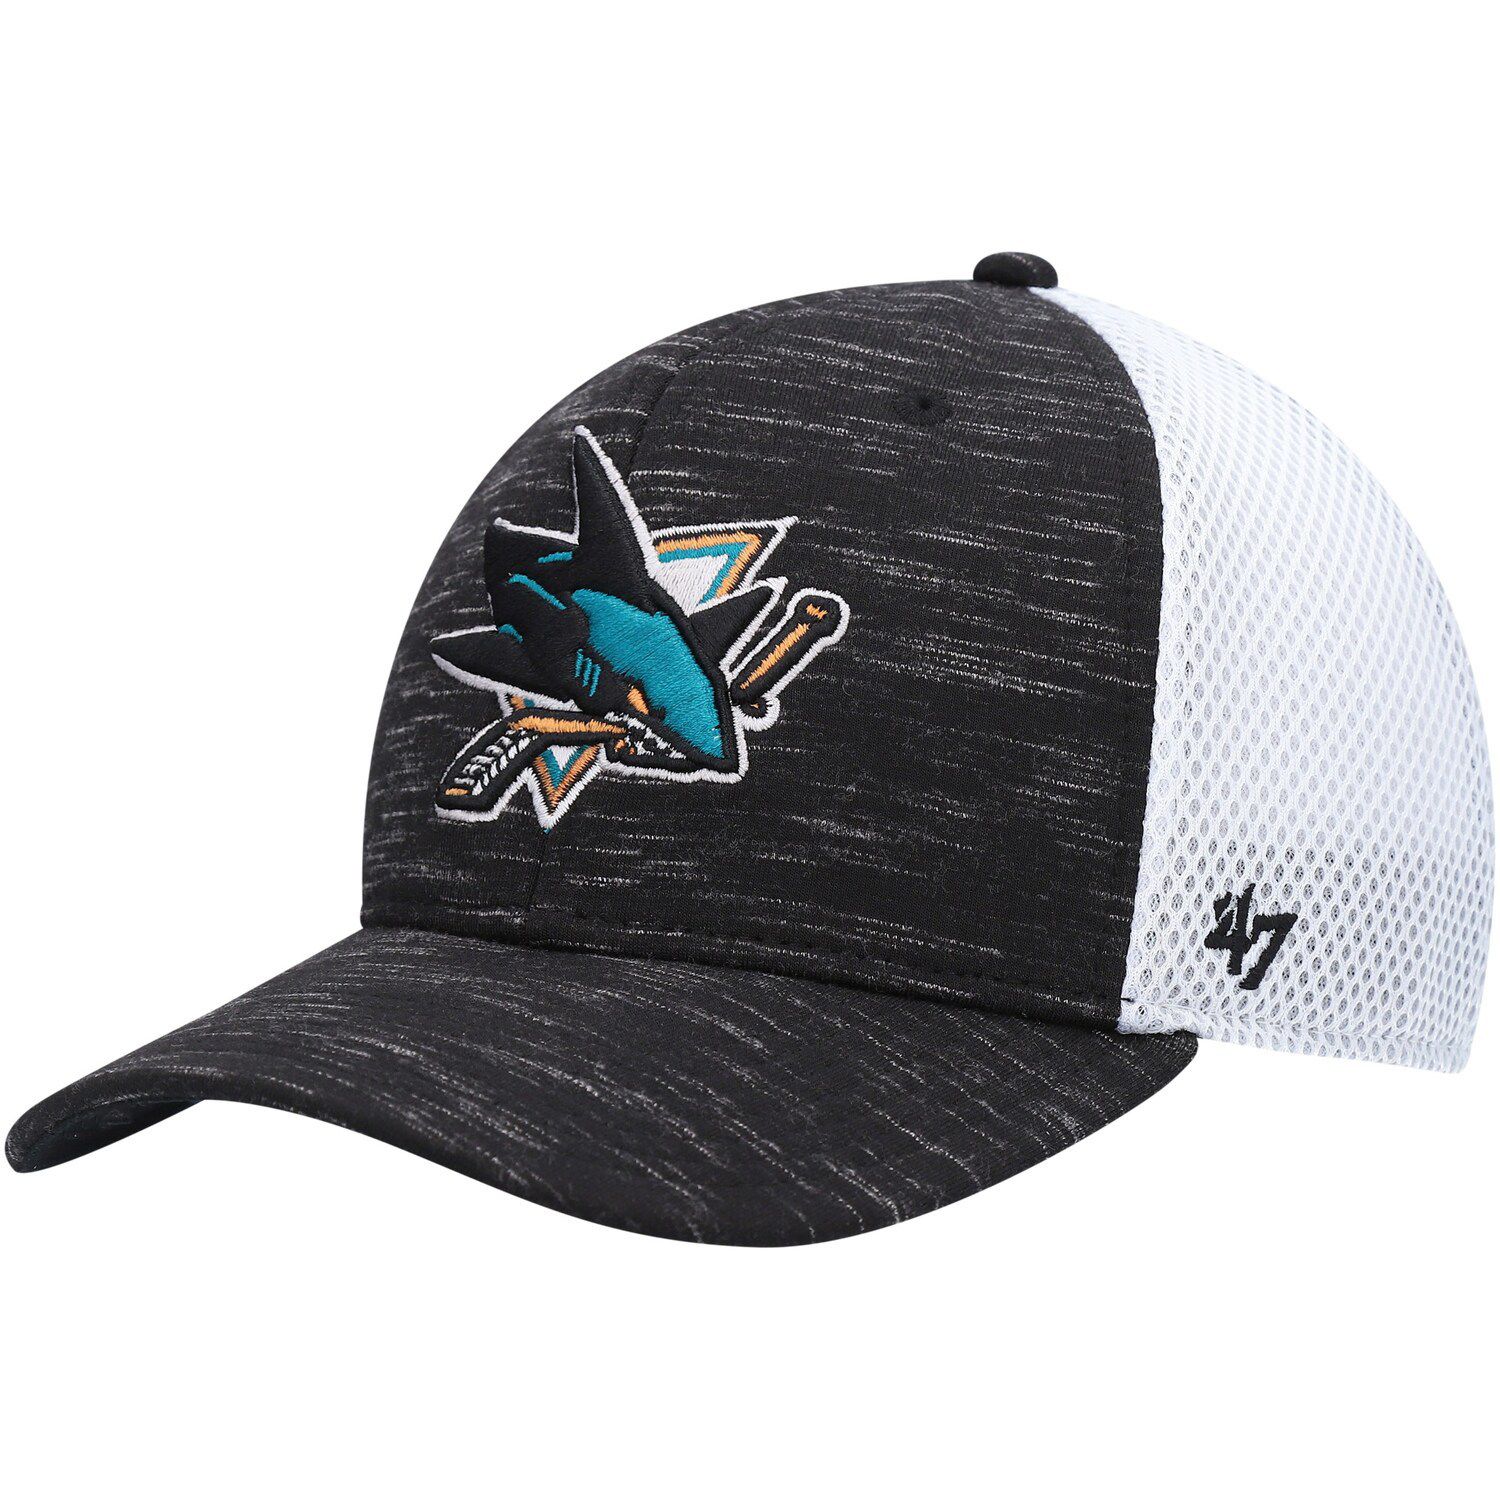 Image for Unbranded Men's '47 Black/White San Jose Sharks Parsons MVP Trucker Space Dye Snapback Hat at Kohl's.